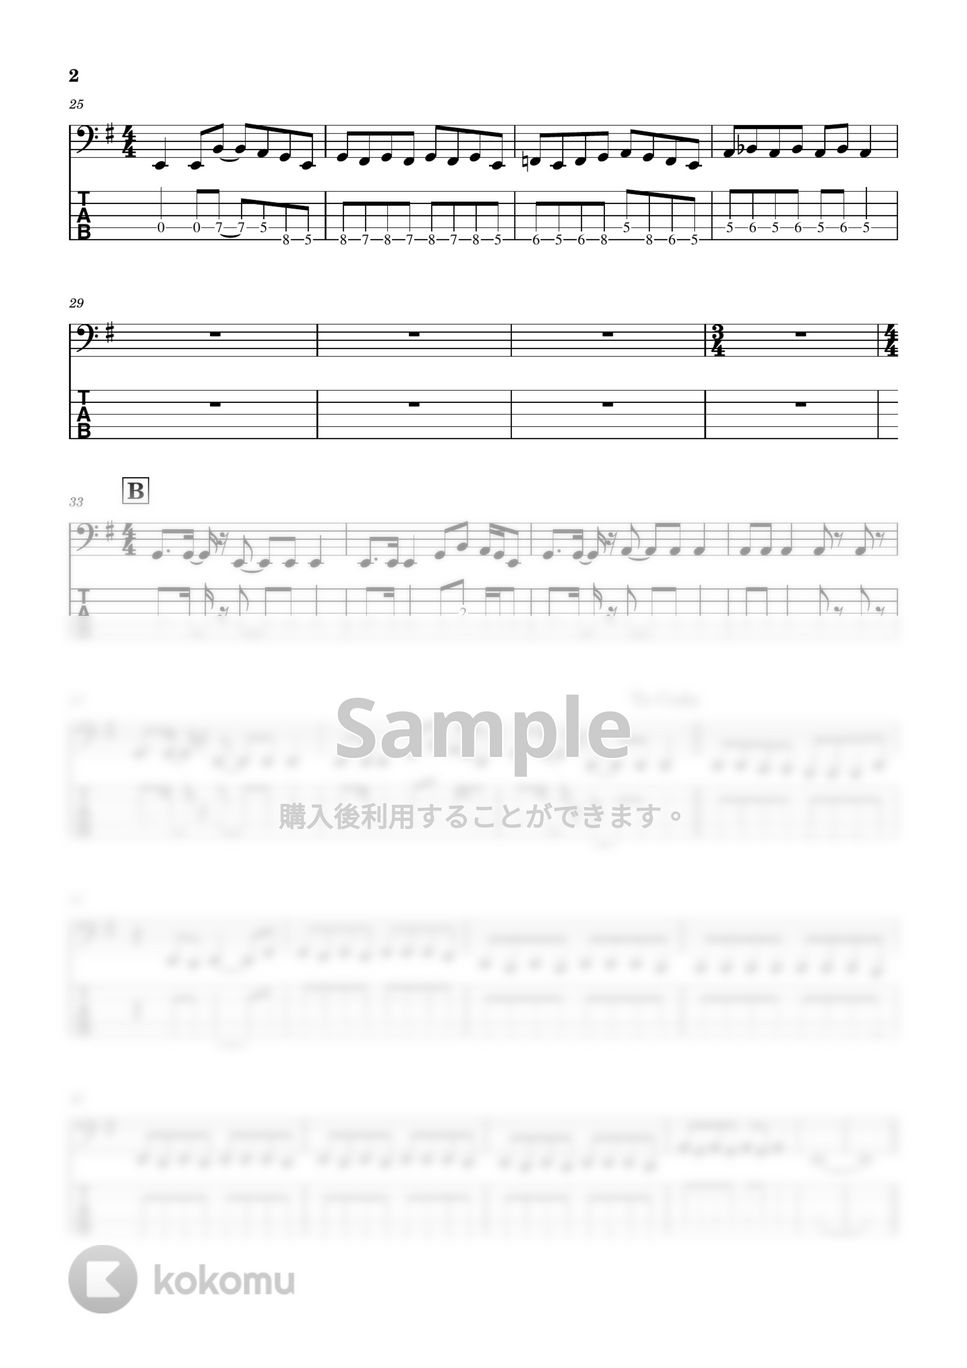 打首獄門同好会 - 88 (Bass tab譜) by Zeo